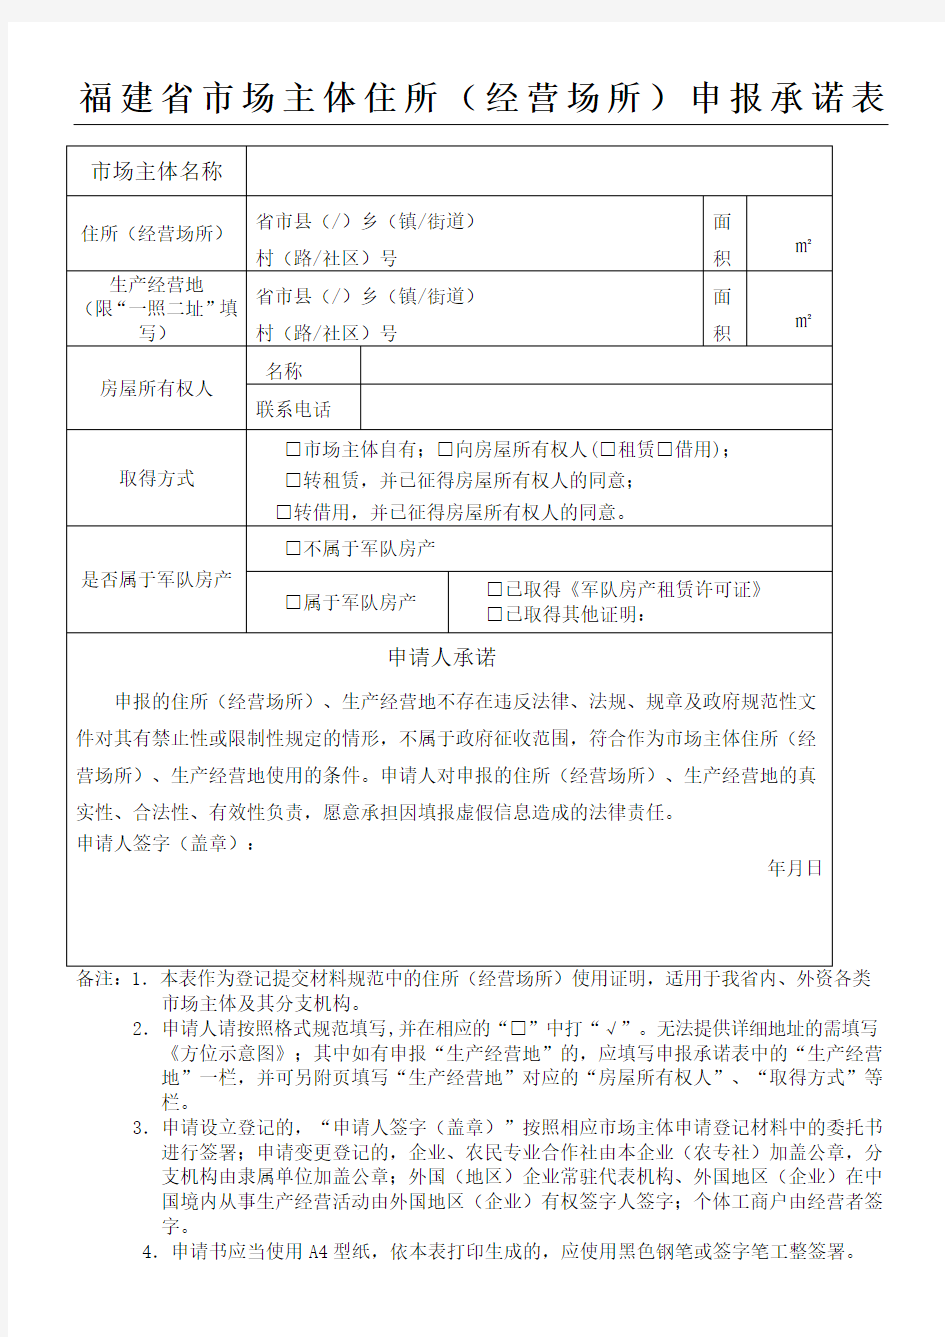 11福建省市场主体住所(经营场所)申报承诺表格模板